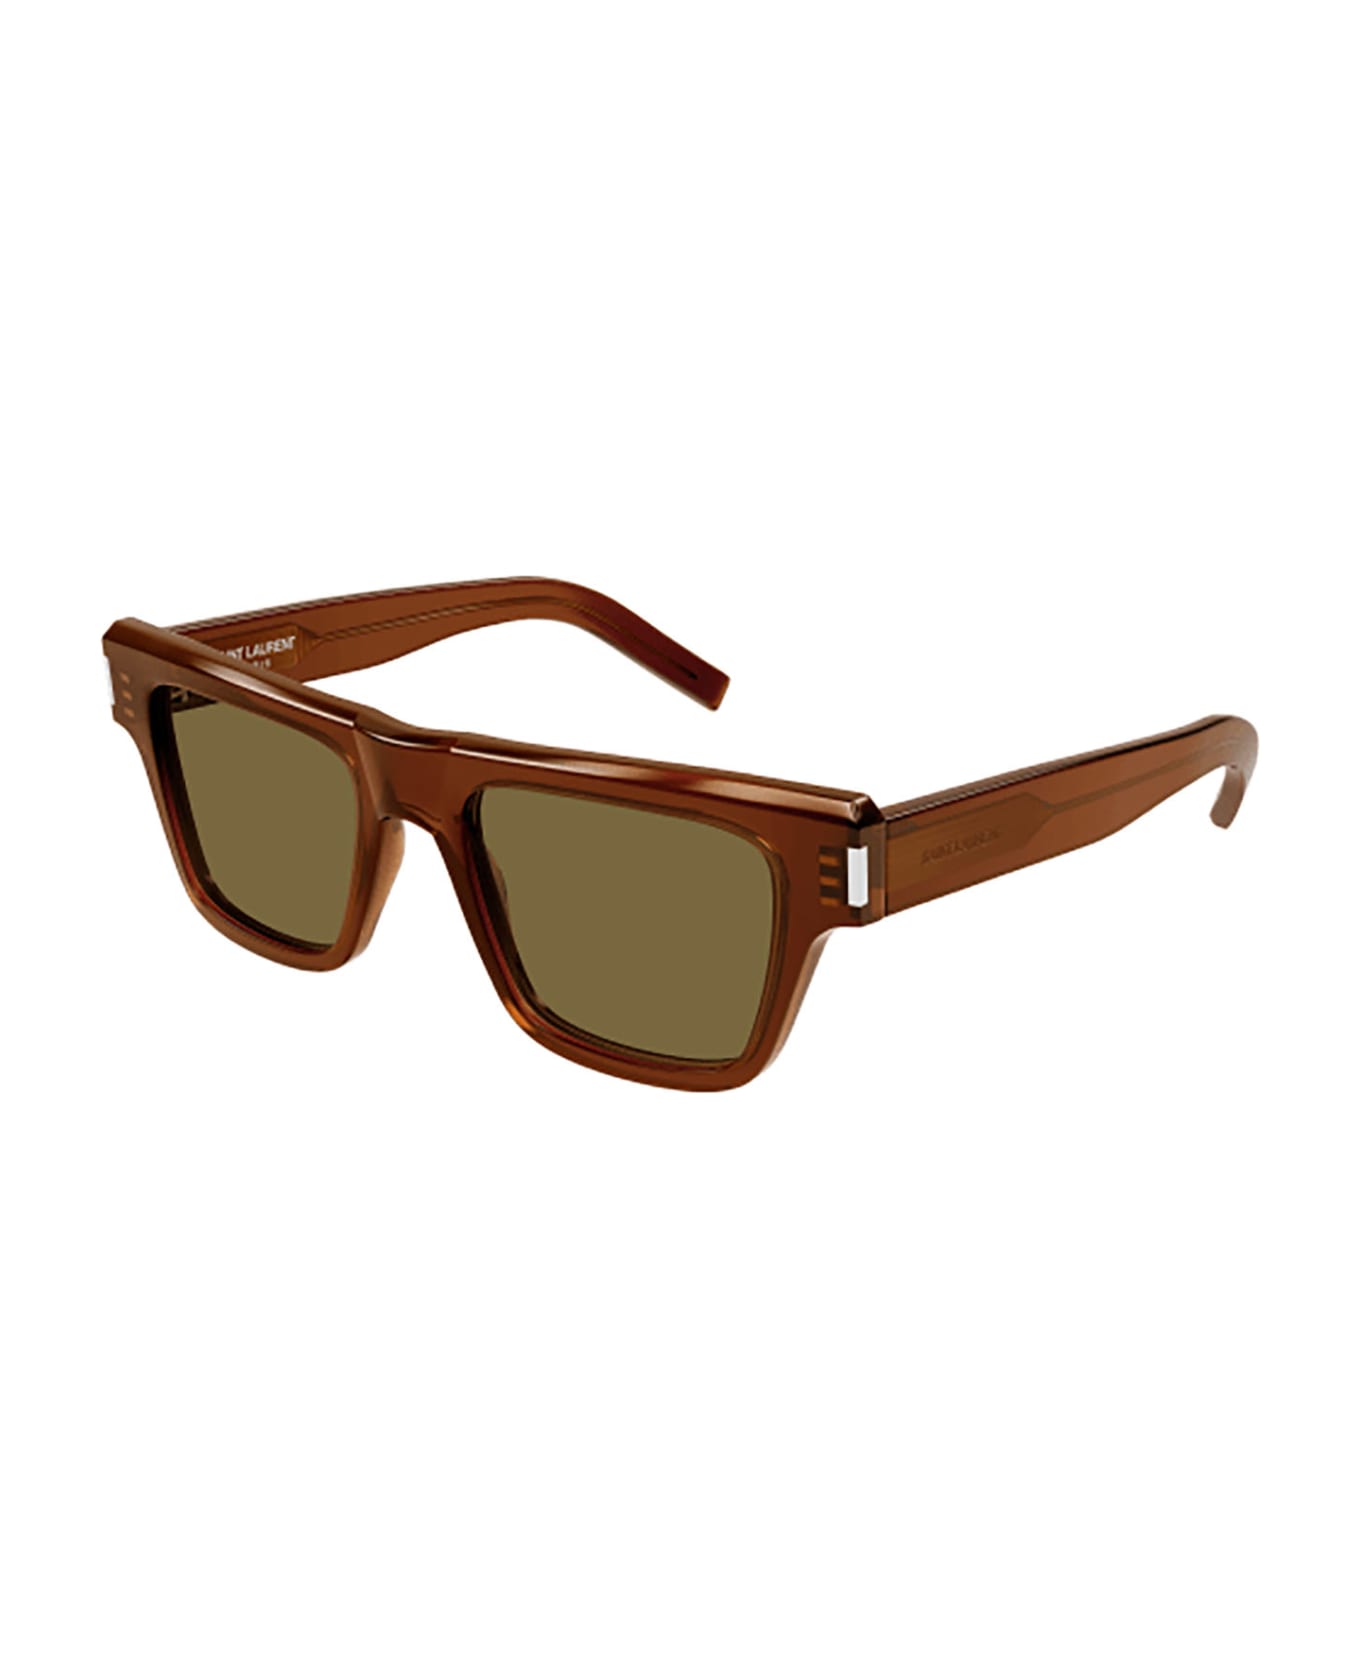 Saint Laurent Eyewear SL 469 Sunglasses - Brown Brown Brown